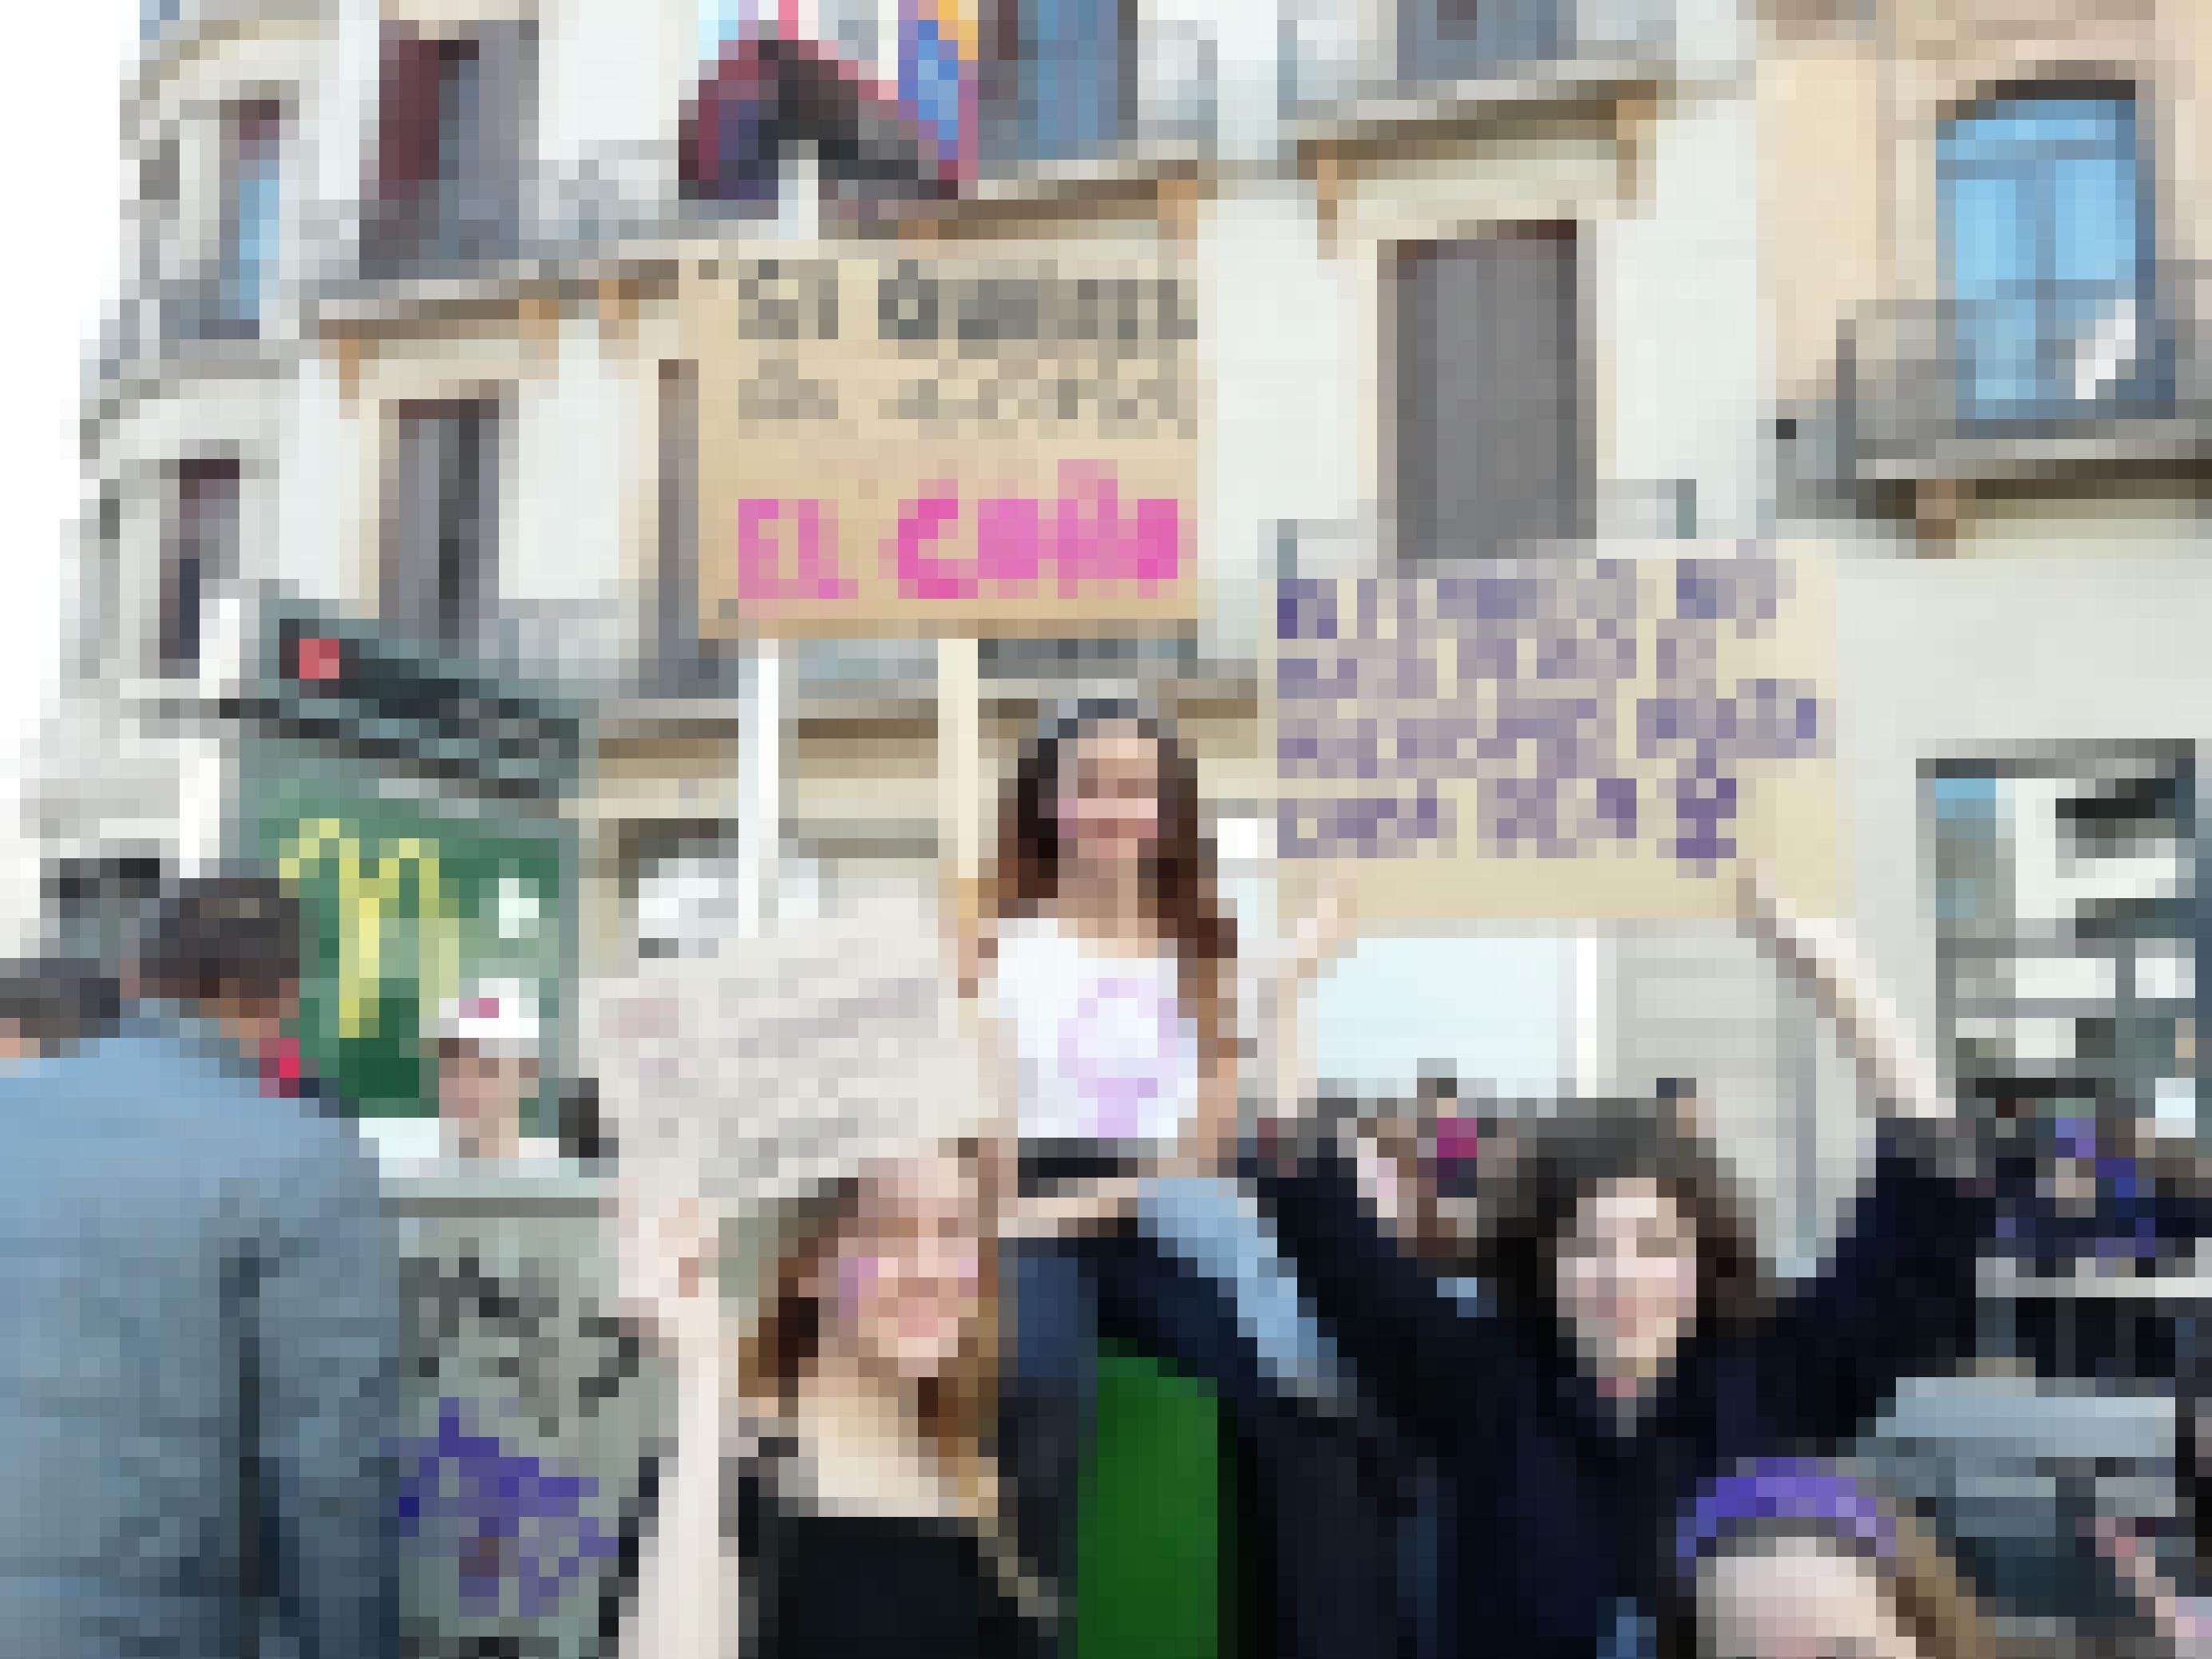 Drei junge Frauen in Barcelona protestieren mit kämpferischen Botschaften für Gleichberechtigung